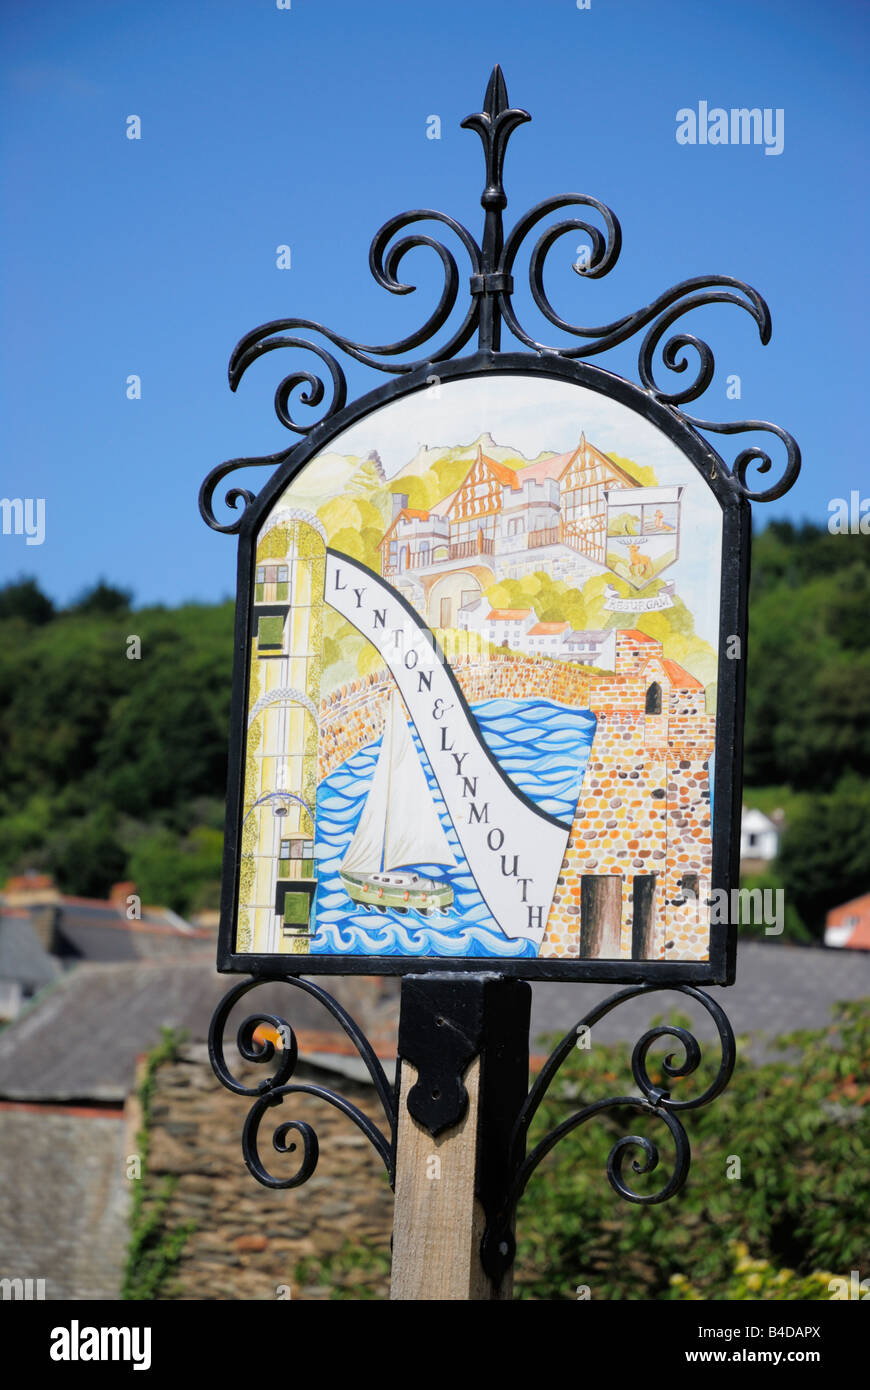 Le panneau de la commune de Lynton et Lynmouth dans le Nord du Devon, UK Banque D'Images